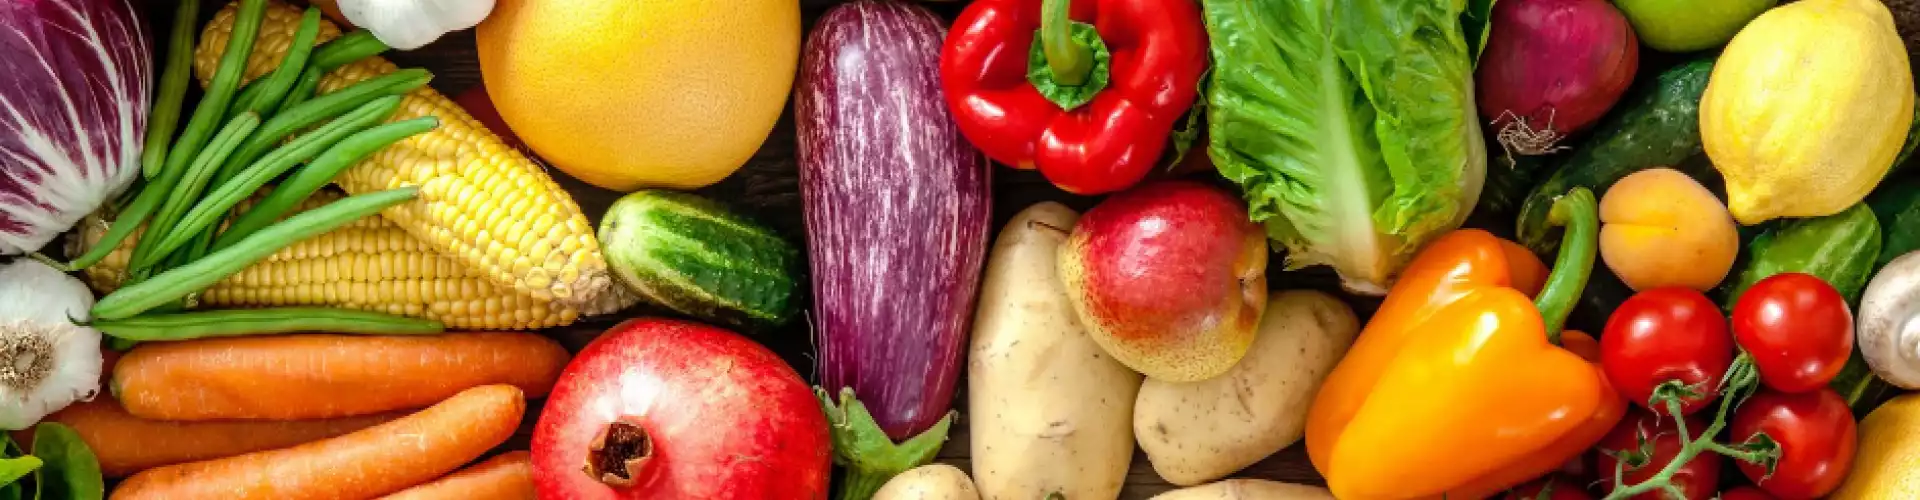 16 способов использовать овощи